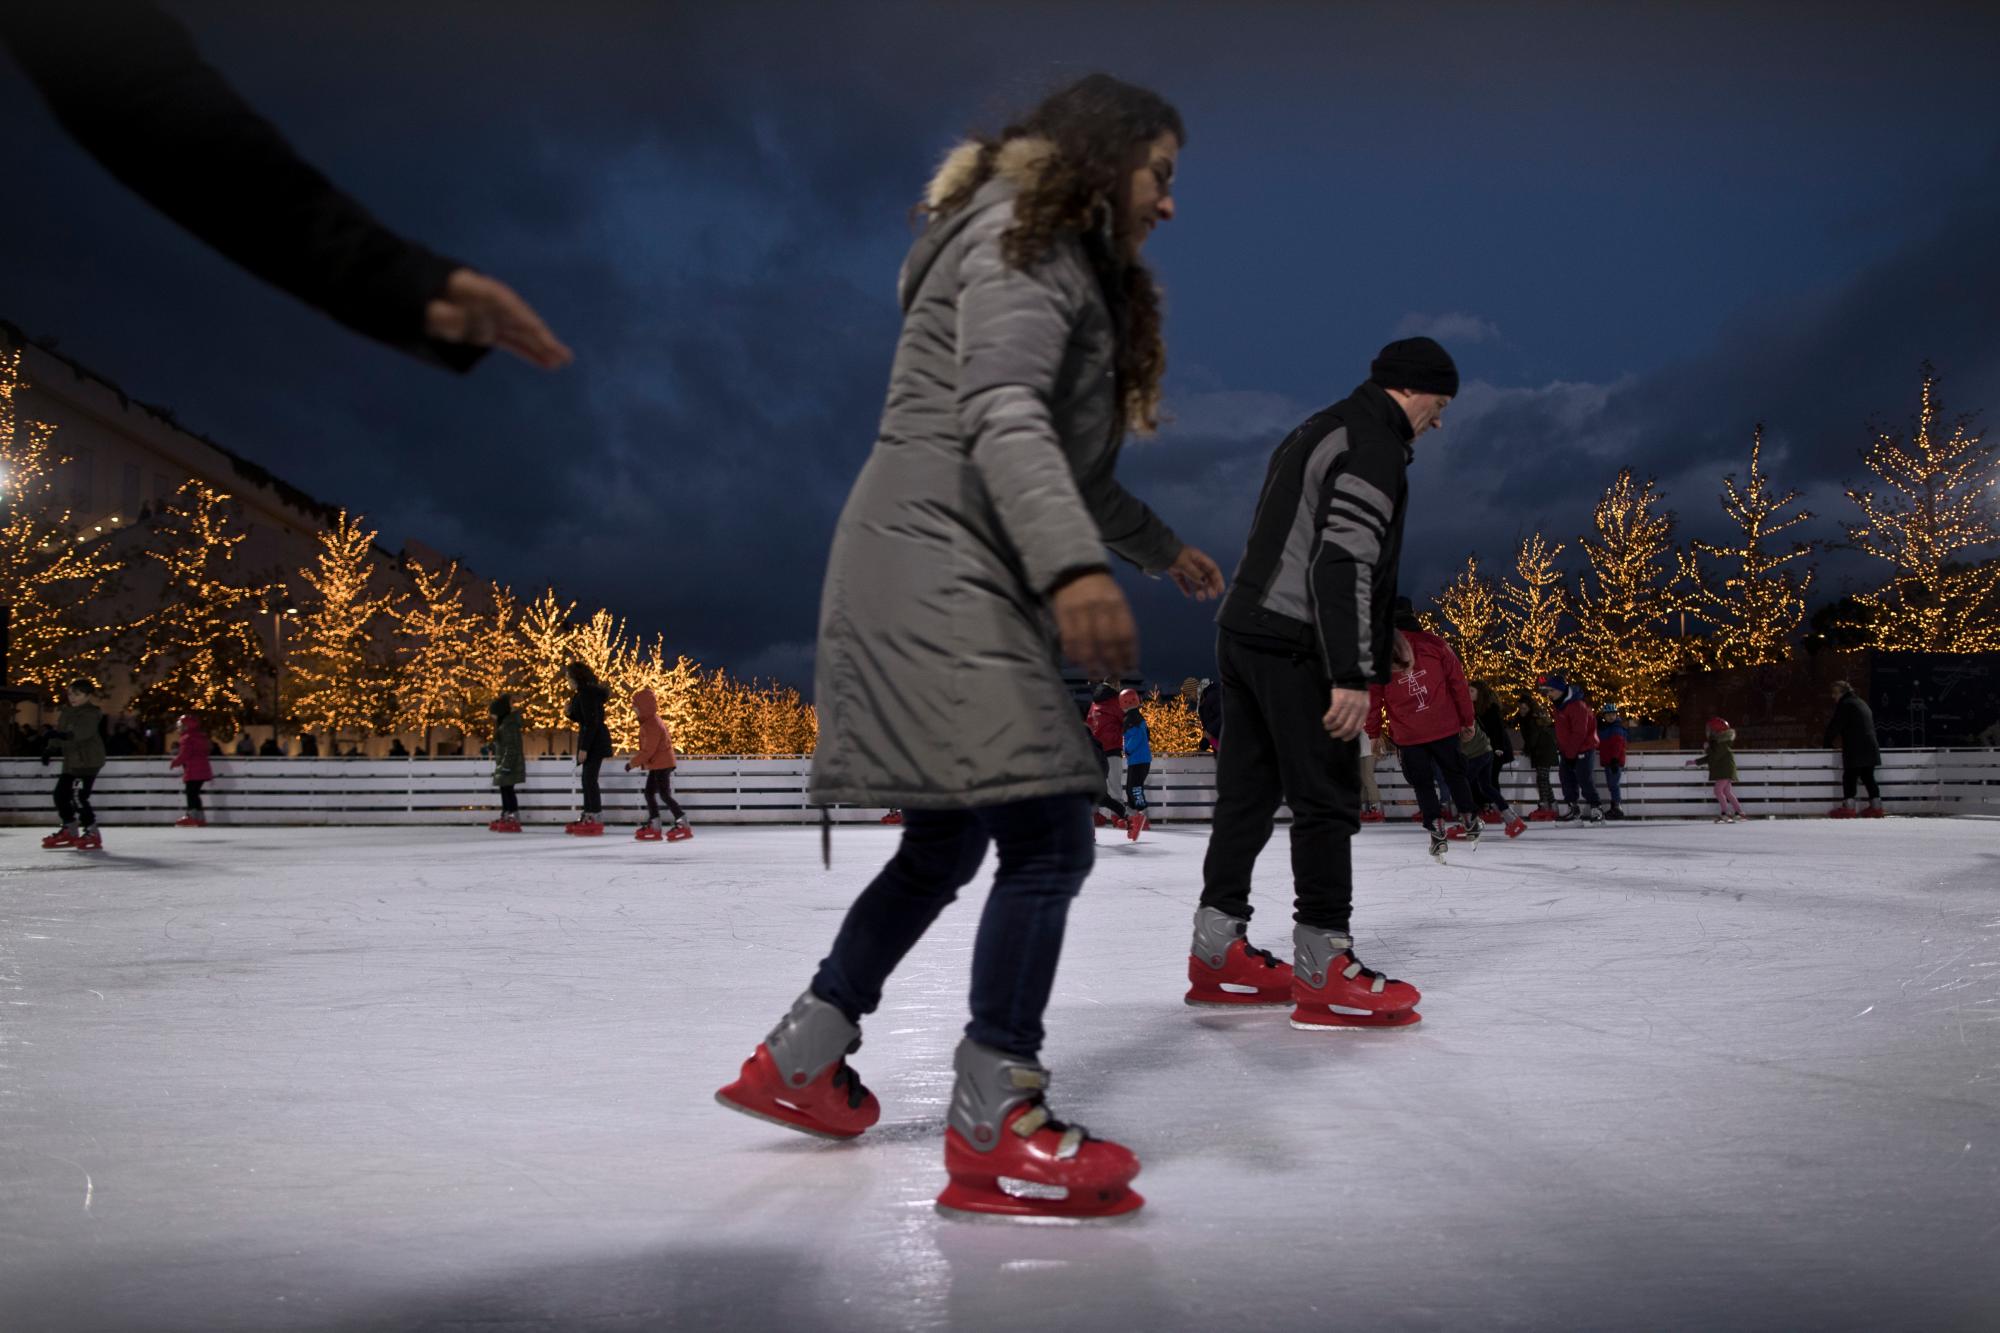 La gente disfruta de patinar sobre hielo en una pista durante el primer día del año en el Centro Cultural de la Fundación Stavros Niarchos en Atenas, el martes 1 de enero de 2019.